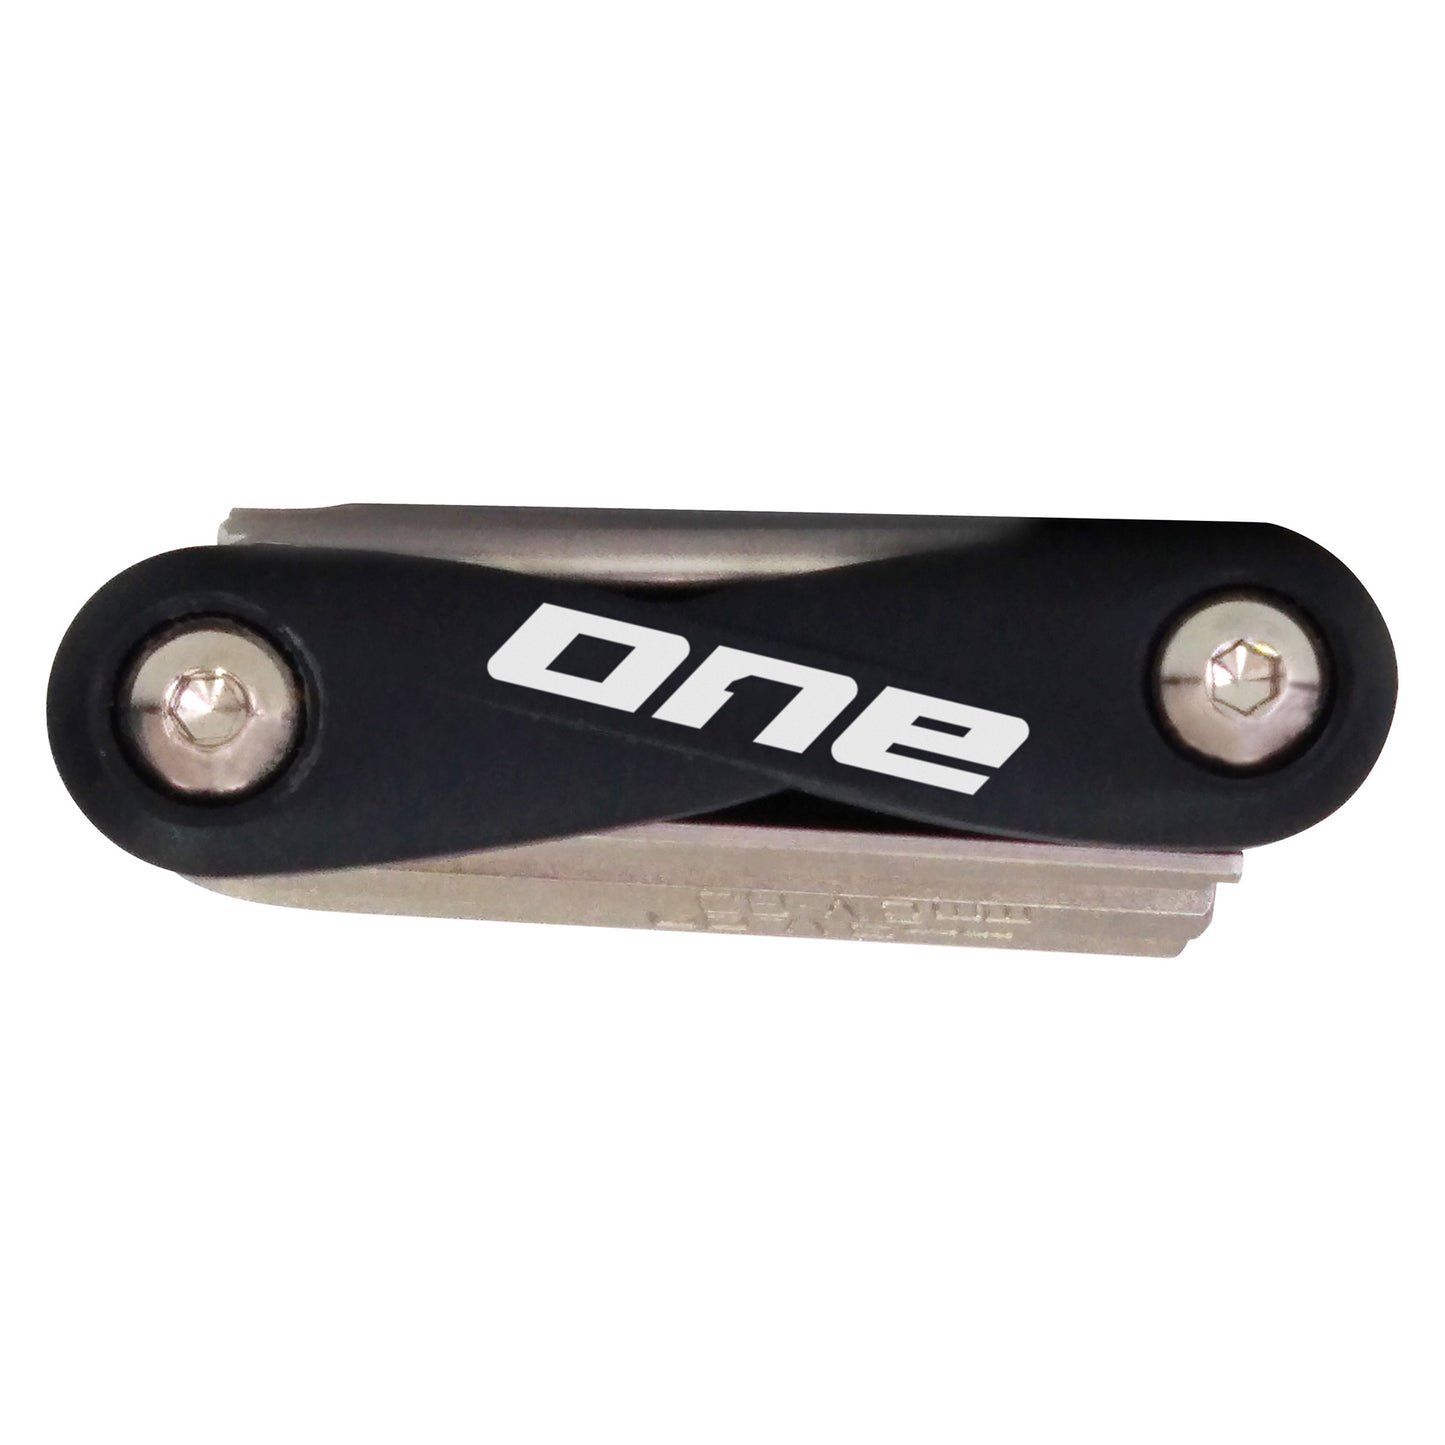 ONE One multi tool 10 unisize black